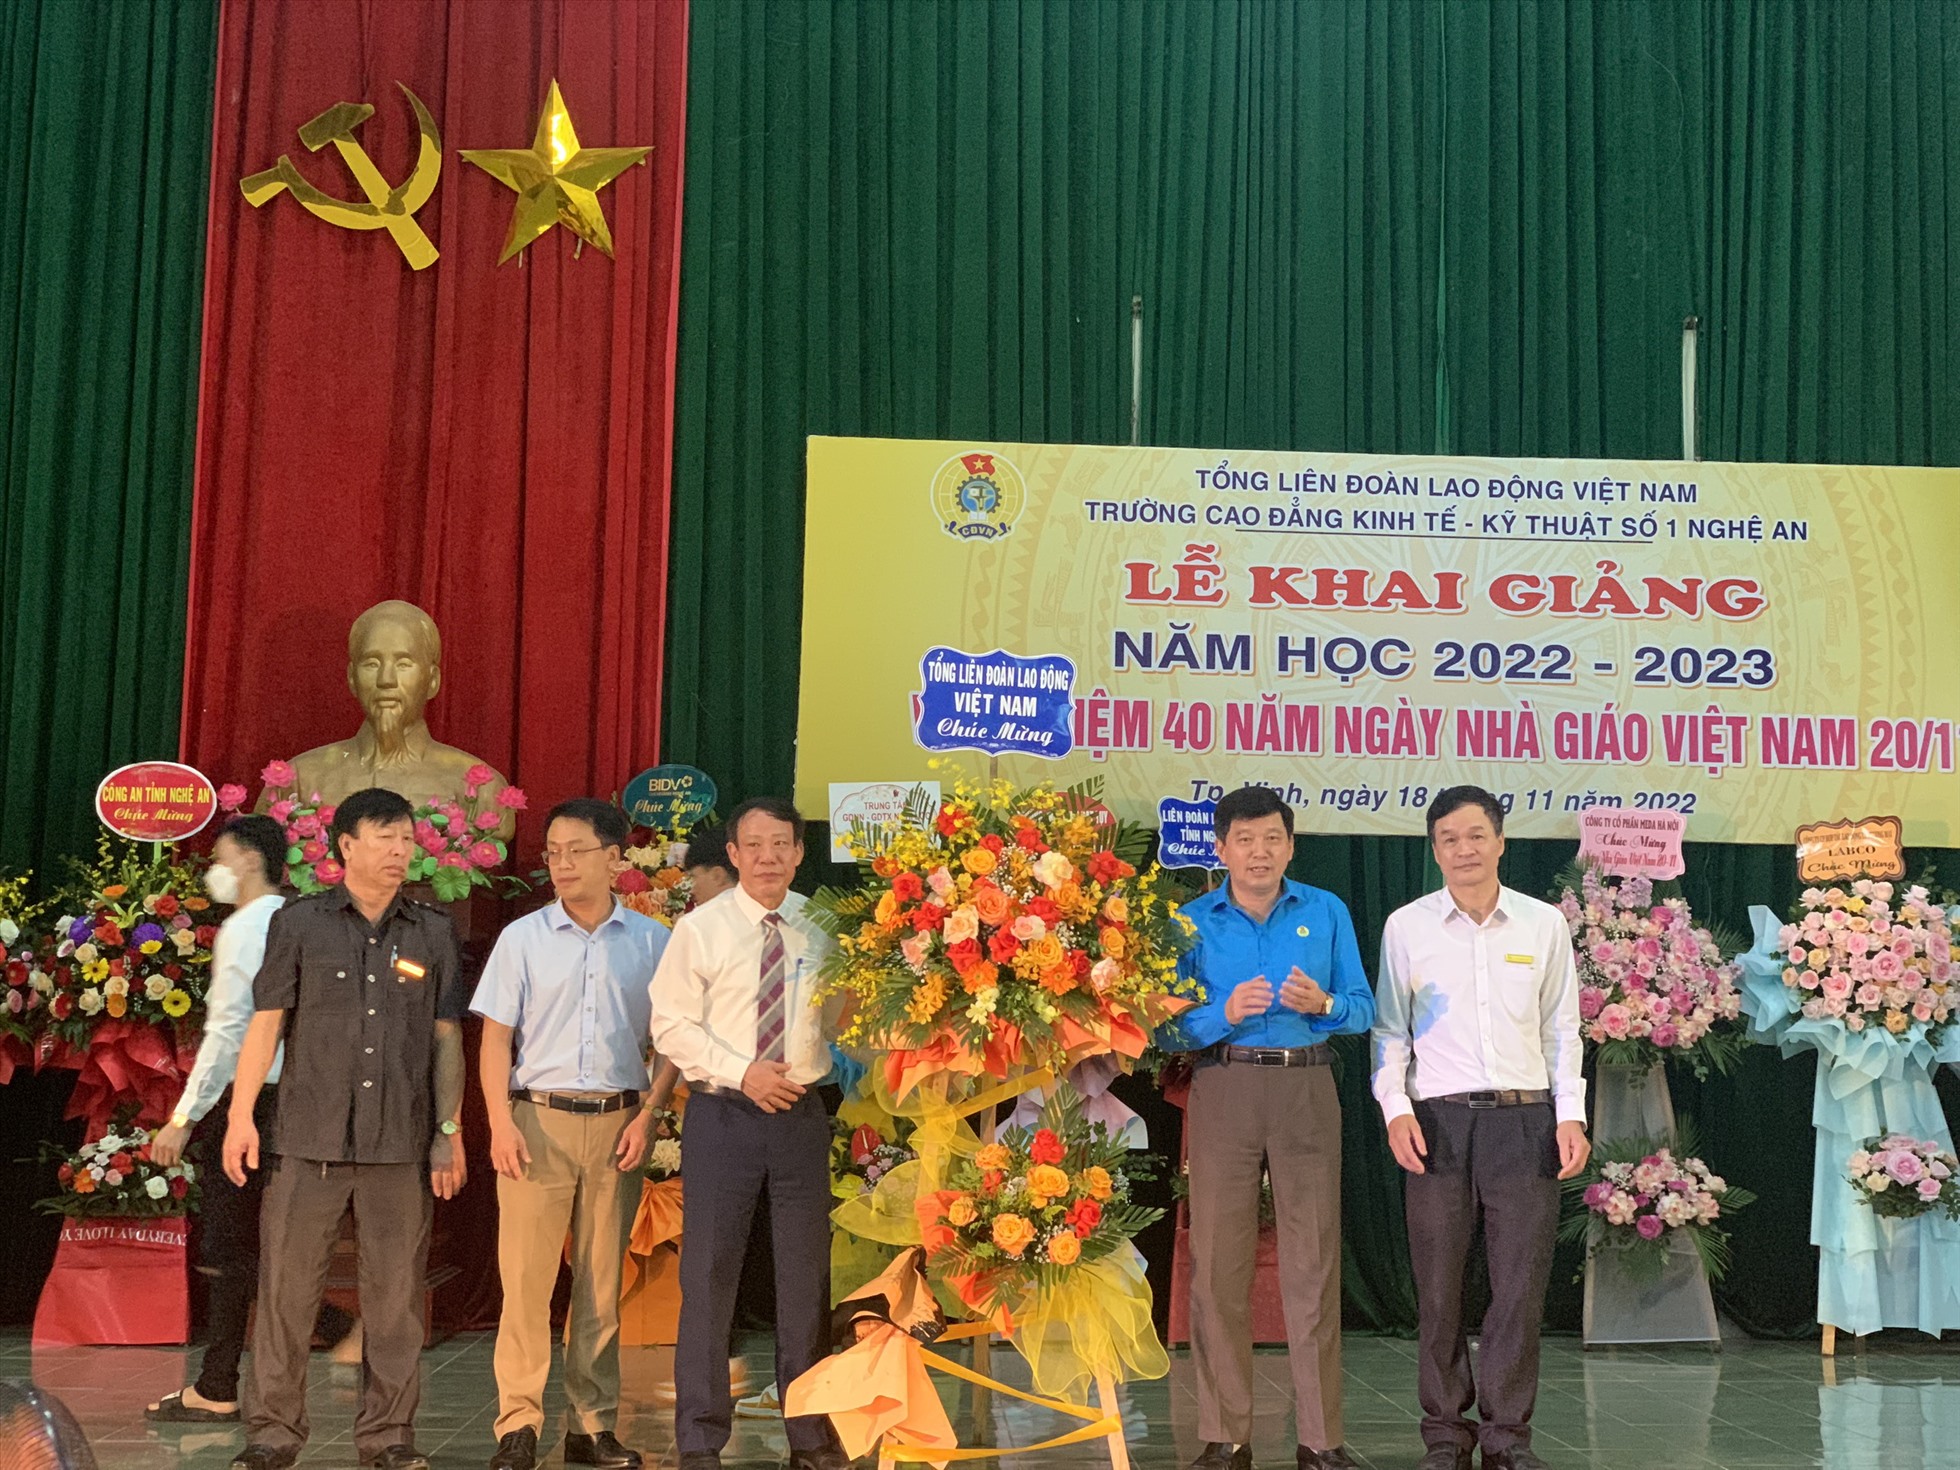 Tổng Liên đoàn Lao động Việt Nam gửi lẵng hoa chúc mừng Trường Cao đẳng Kinh tế - Kỹ thuật số 1 Nghệ An nhân dịp khai giảng. Ảnh: Thanh Tùng